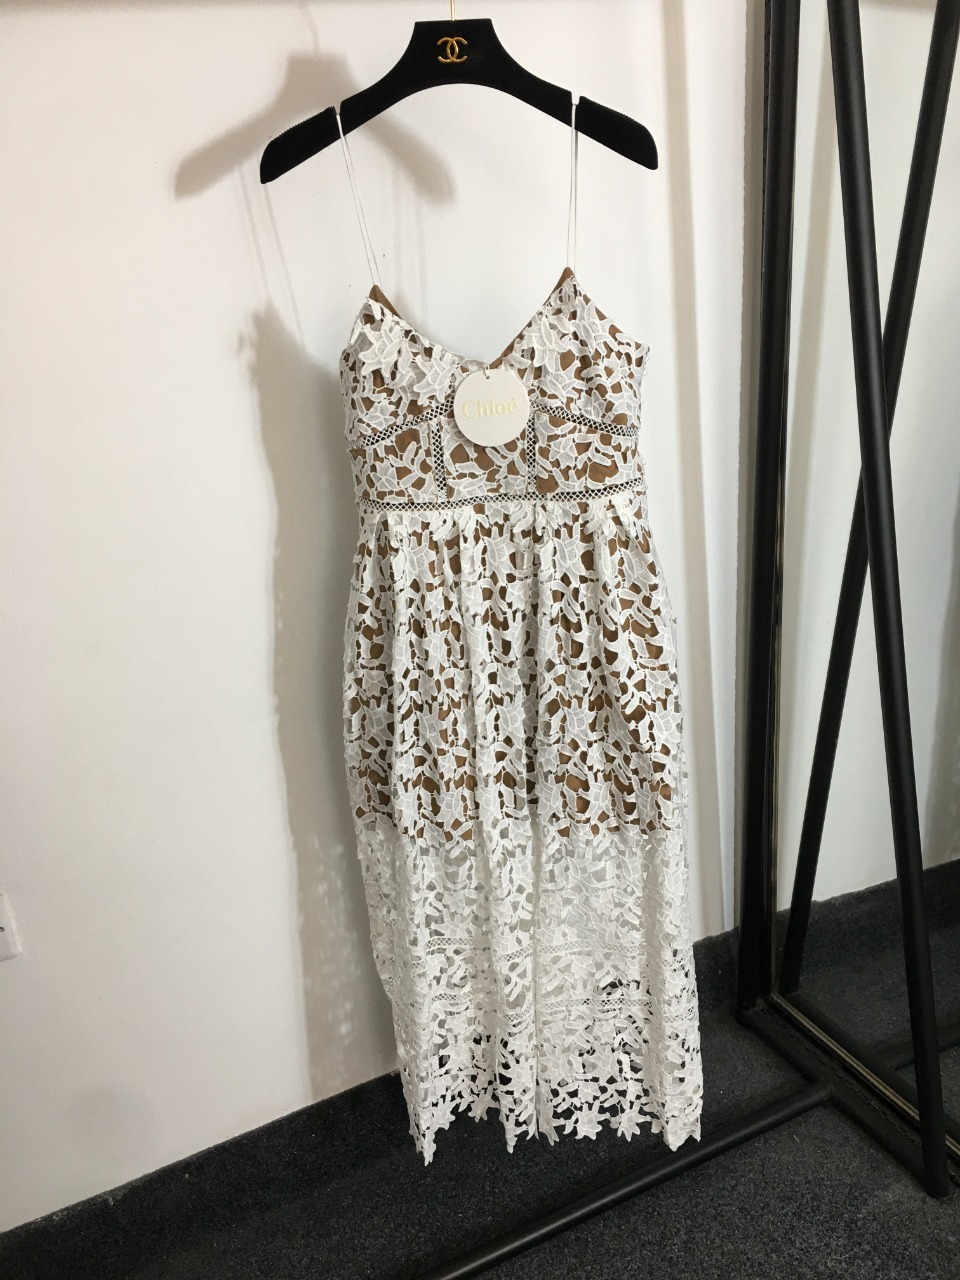 Stylish lacy dress